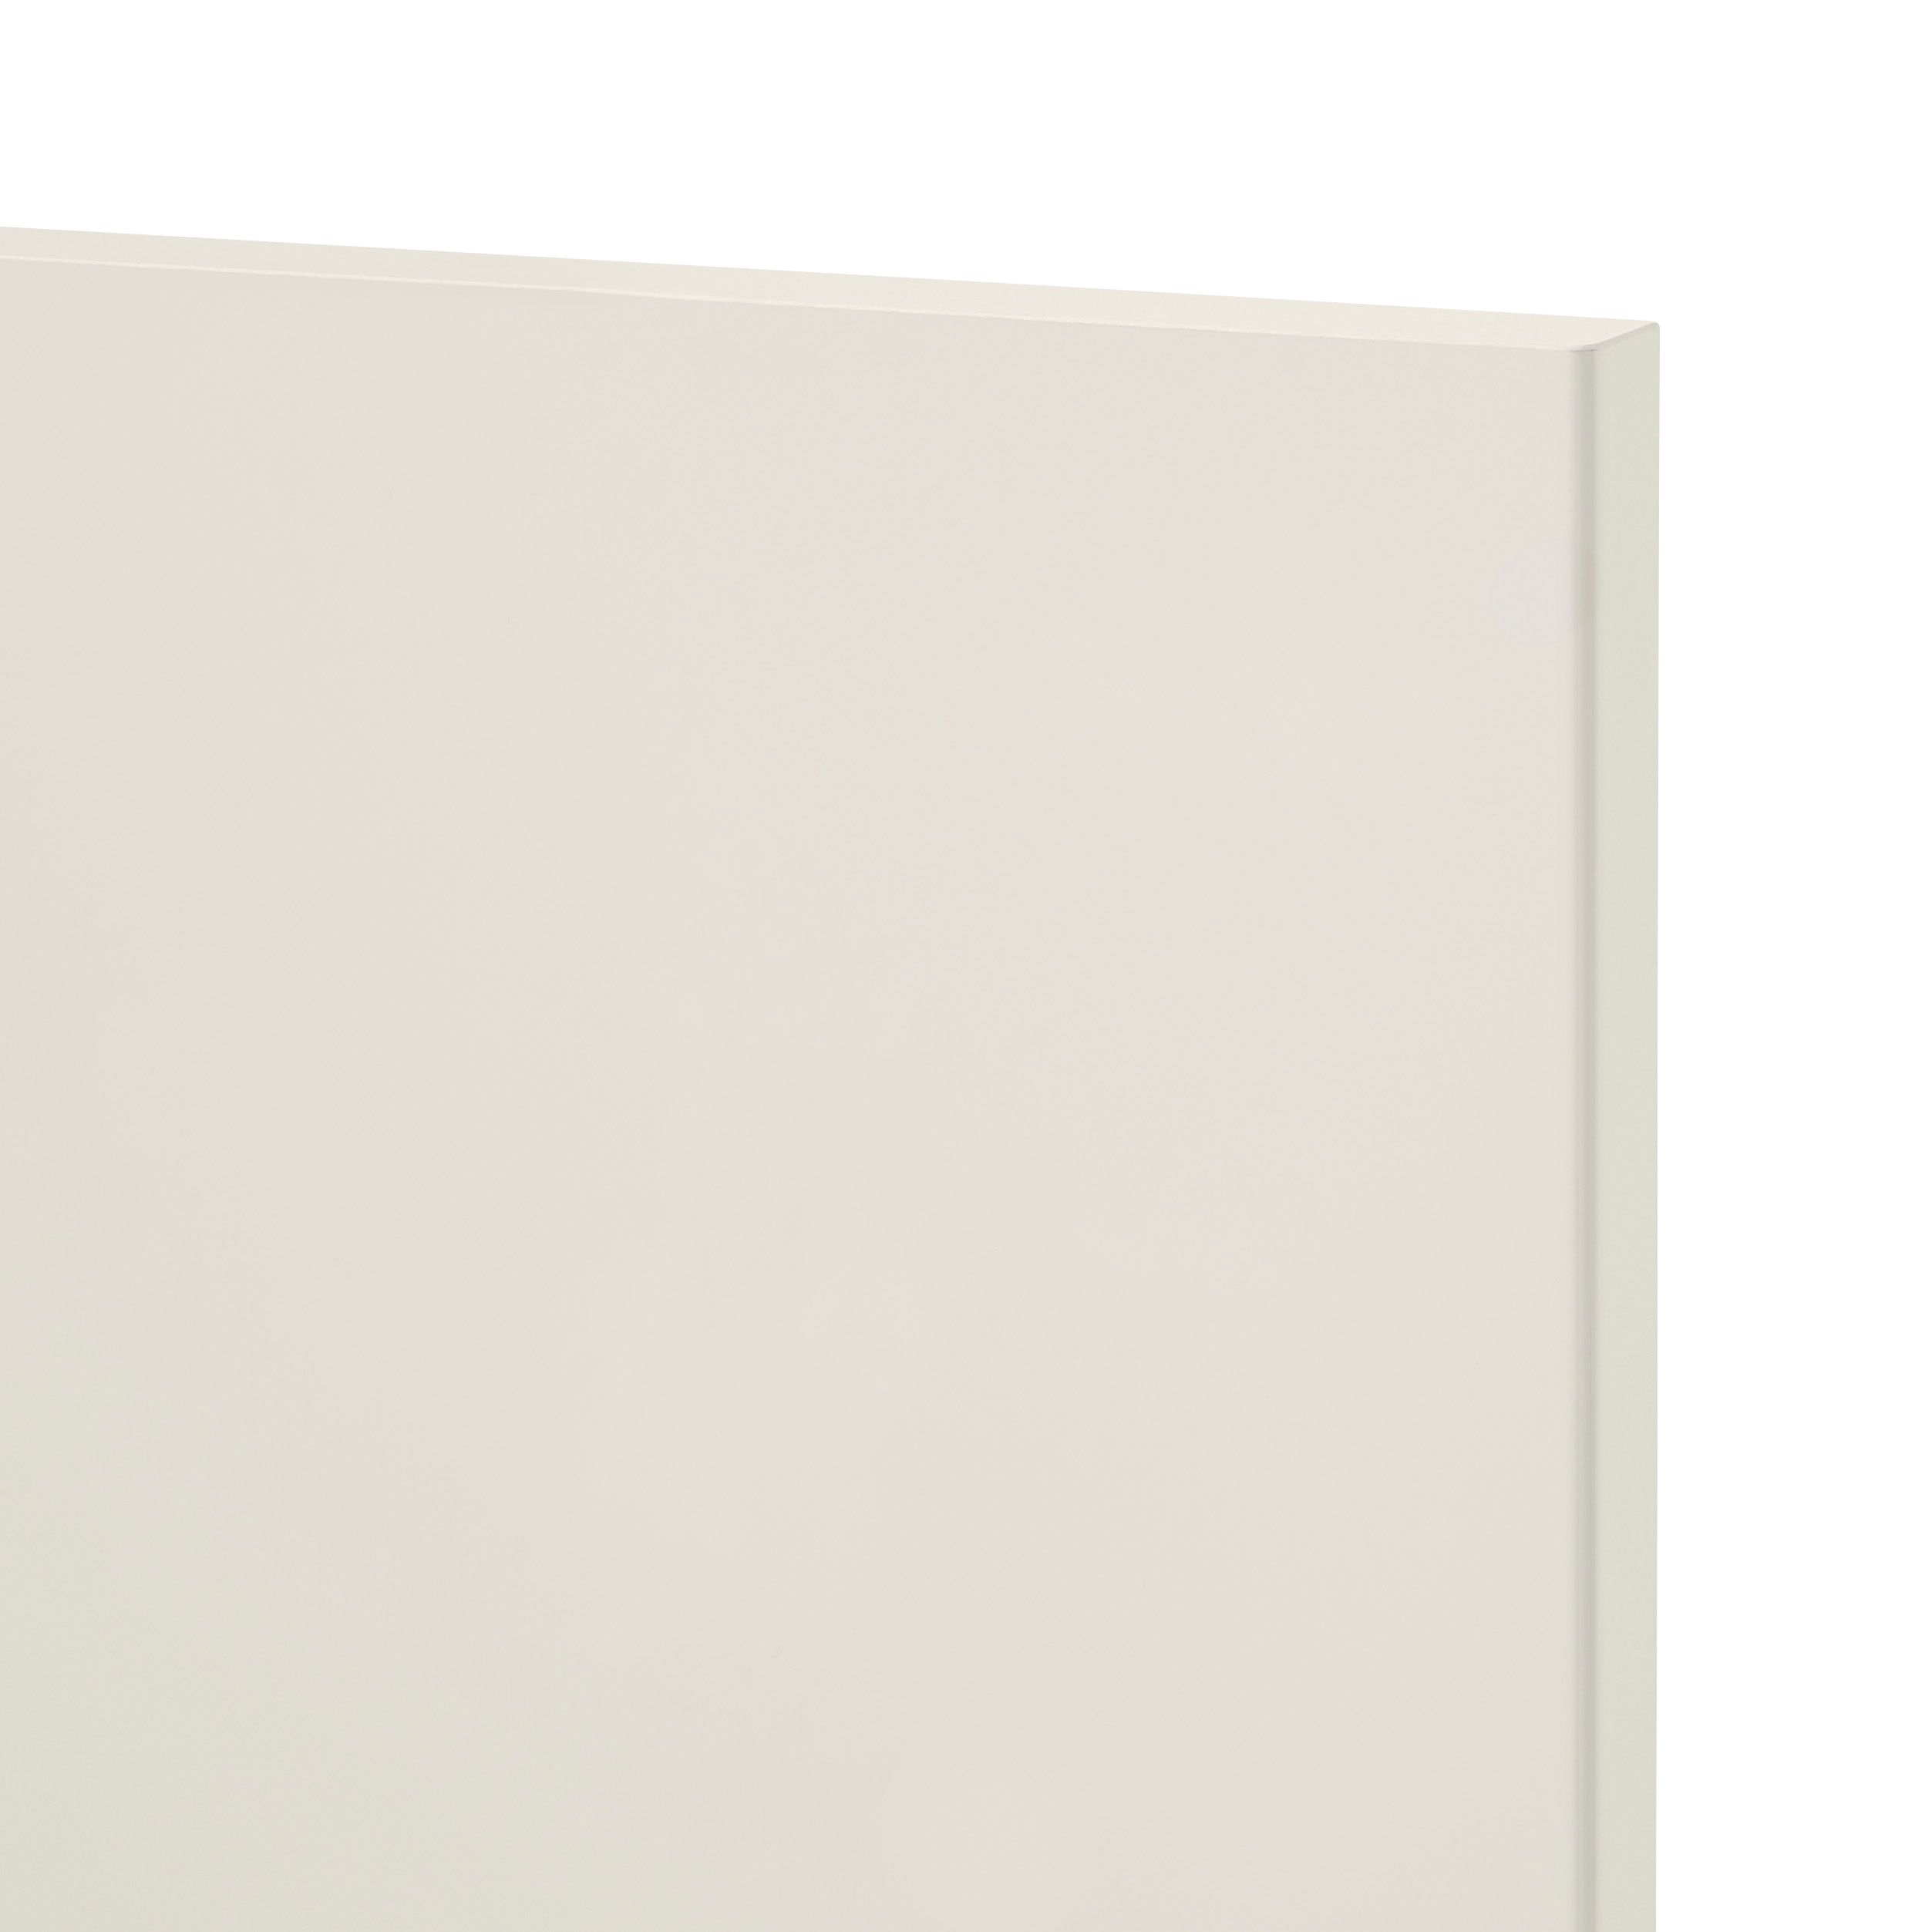 GoodHome Stevia Gloss cream slab Tall larder Cabinet door (W)500mm (H)1467mm (T)18mm